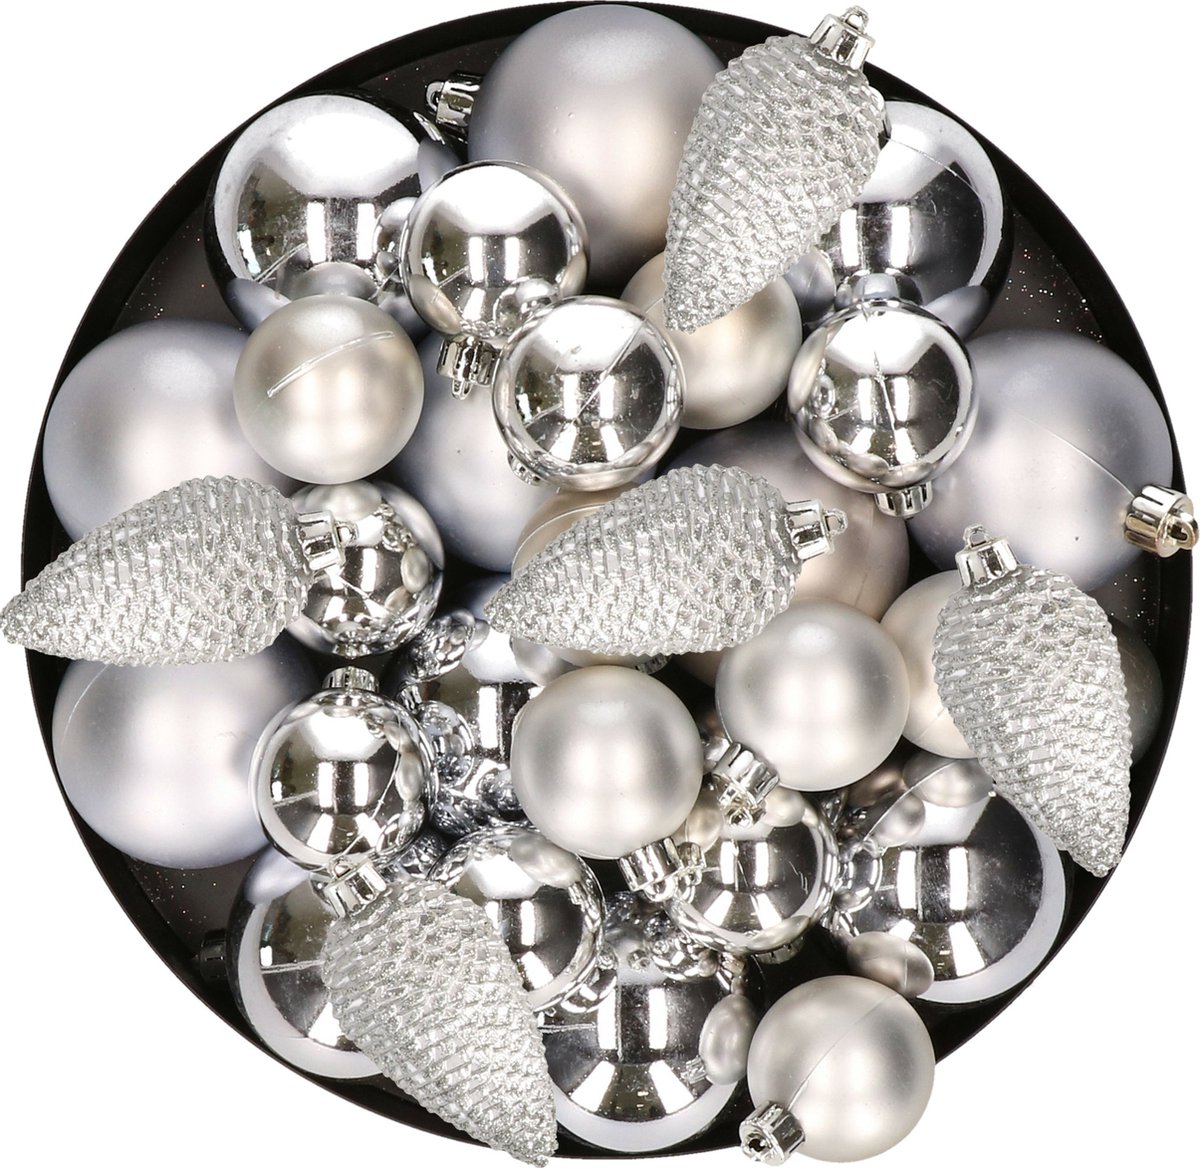 Kerstversiering kunststof kerstballen zilver 6-8-10 cm pakket van 50x stuks - Kerstboomversiering